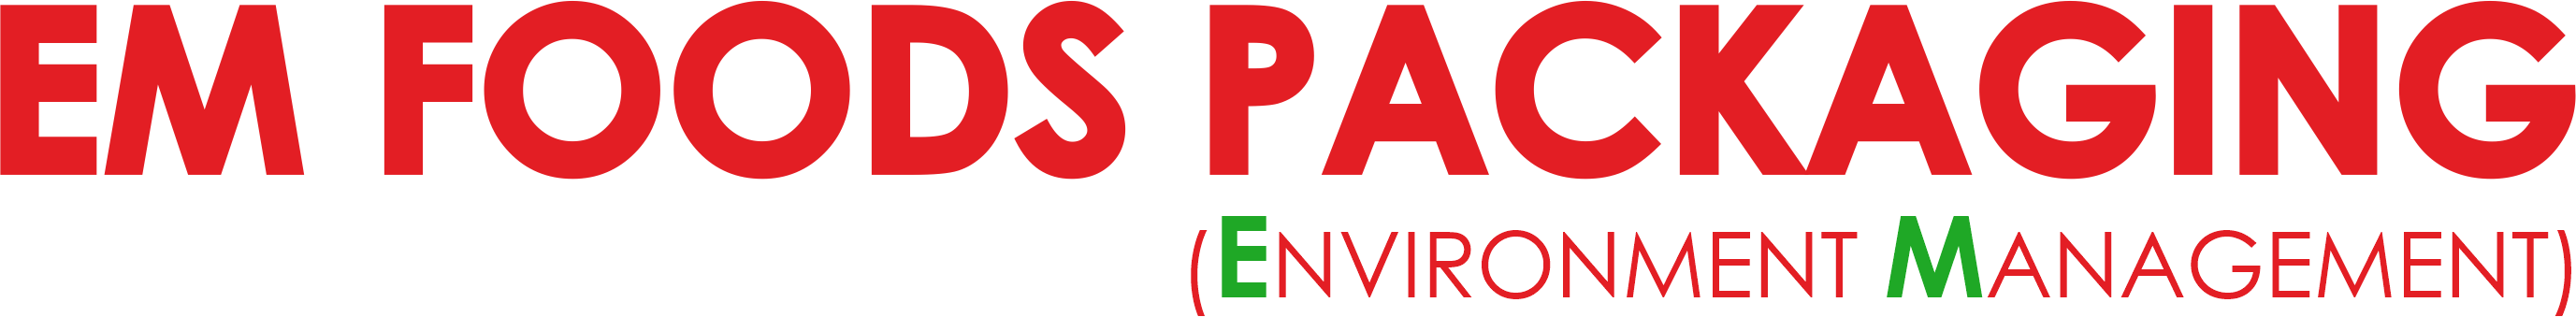 EM Foods Packaging Logo